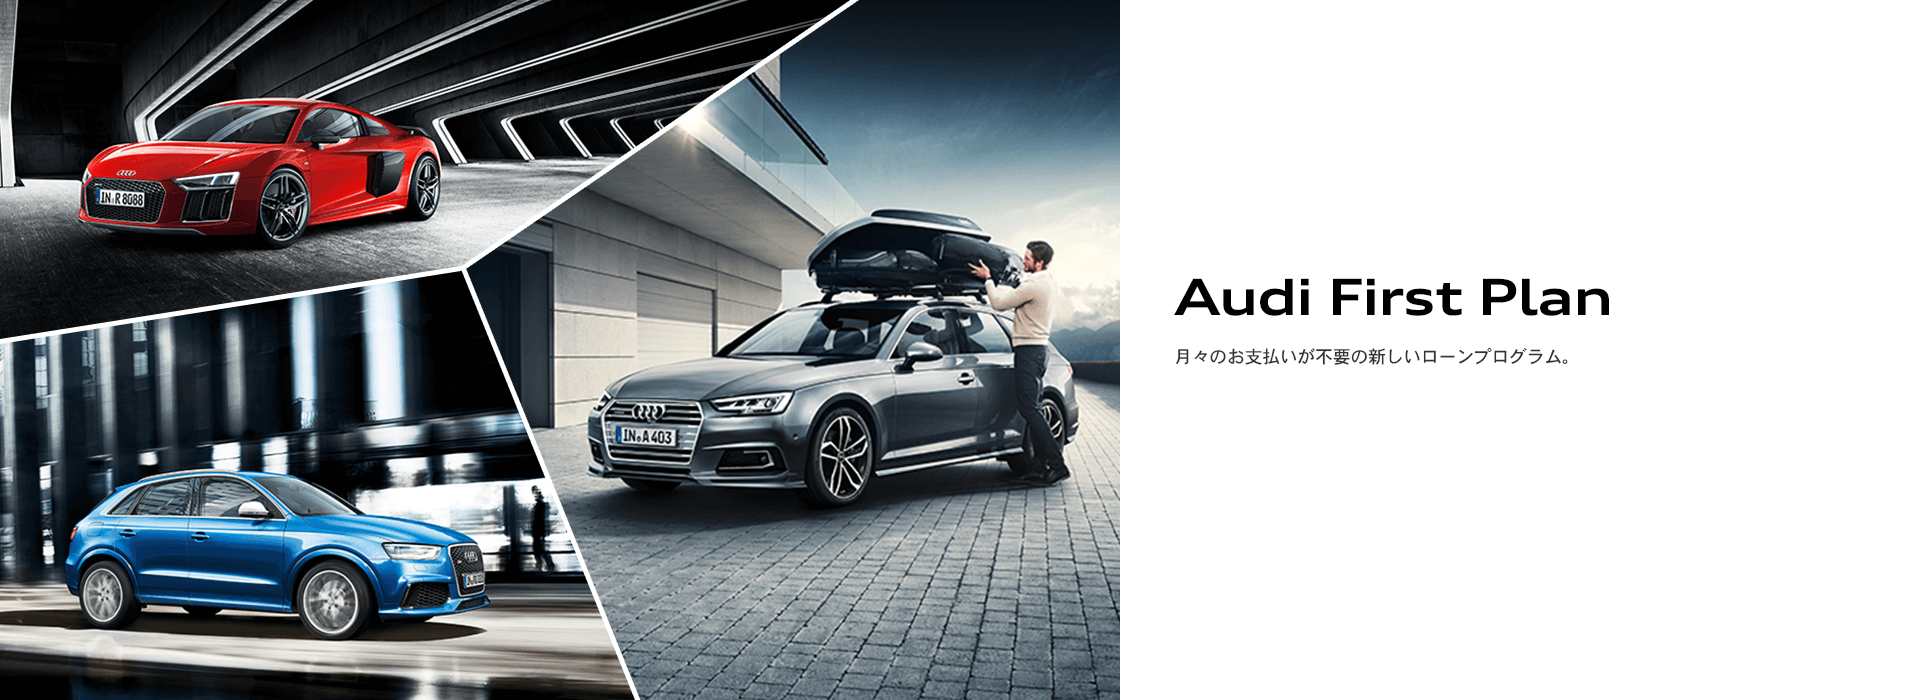 Audi First Plan 月々のお支払いが不要の新しいローンプログラム。